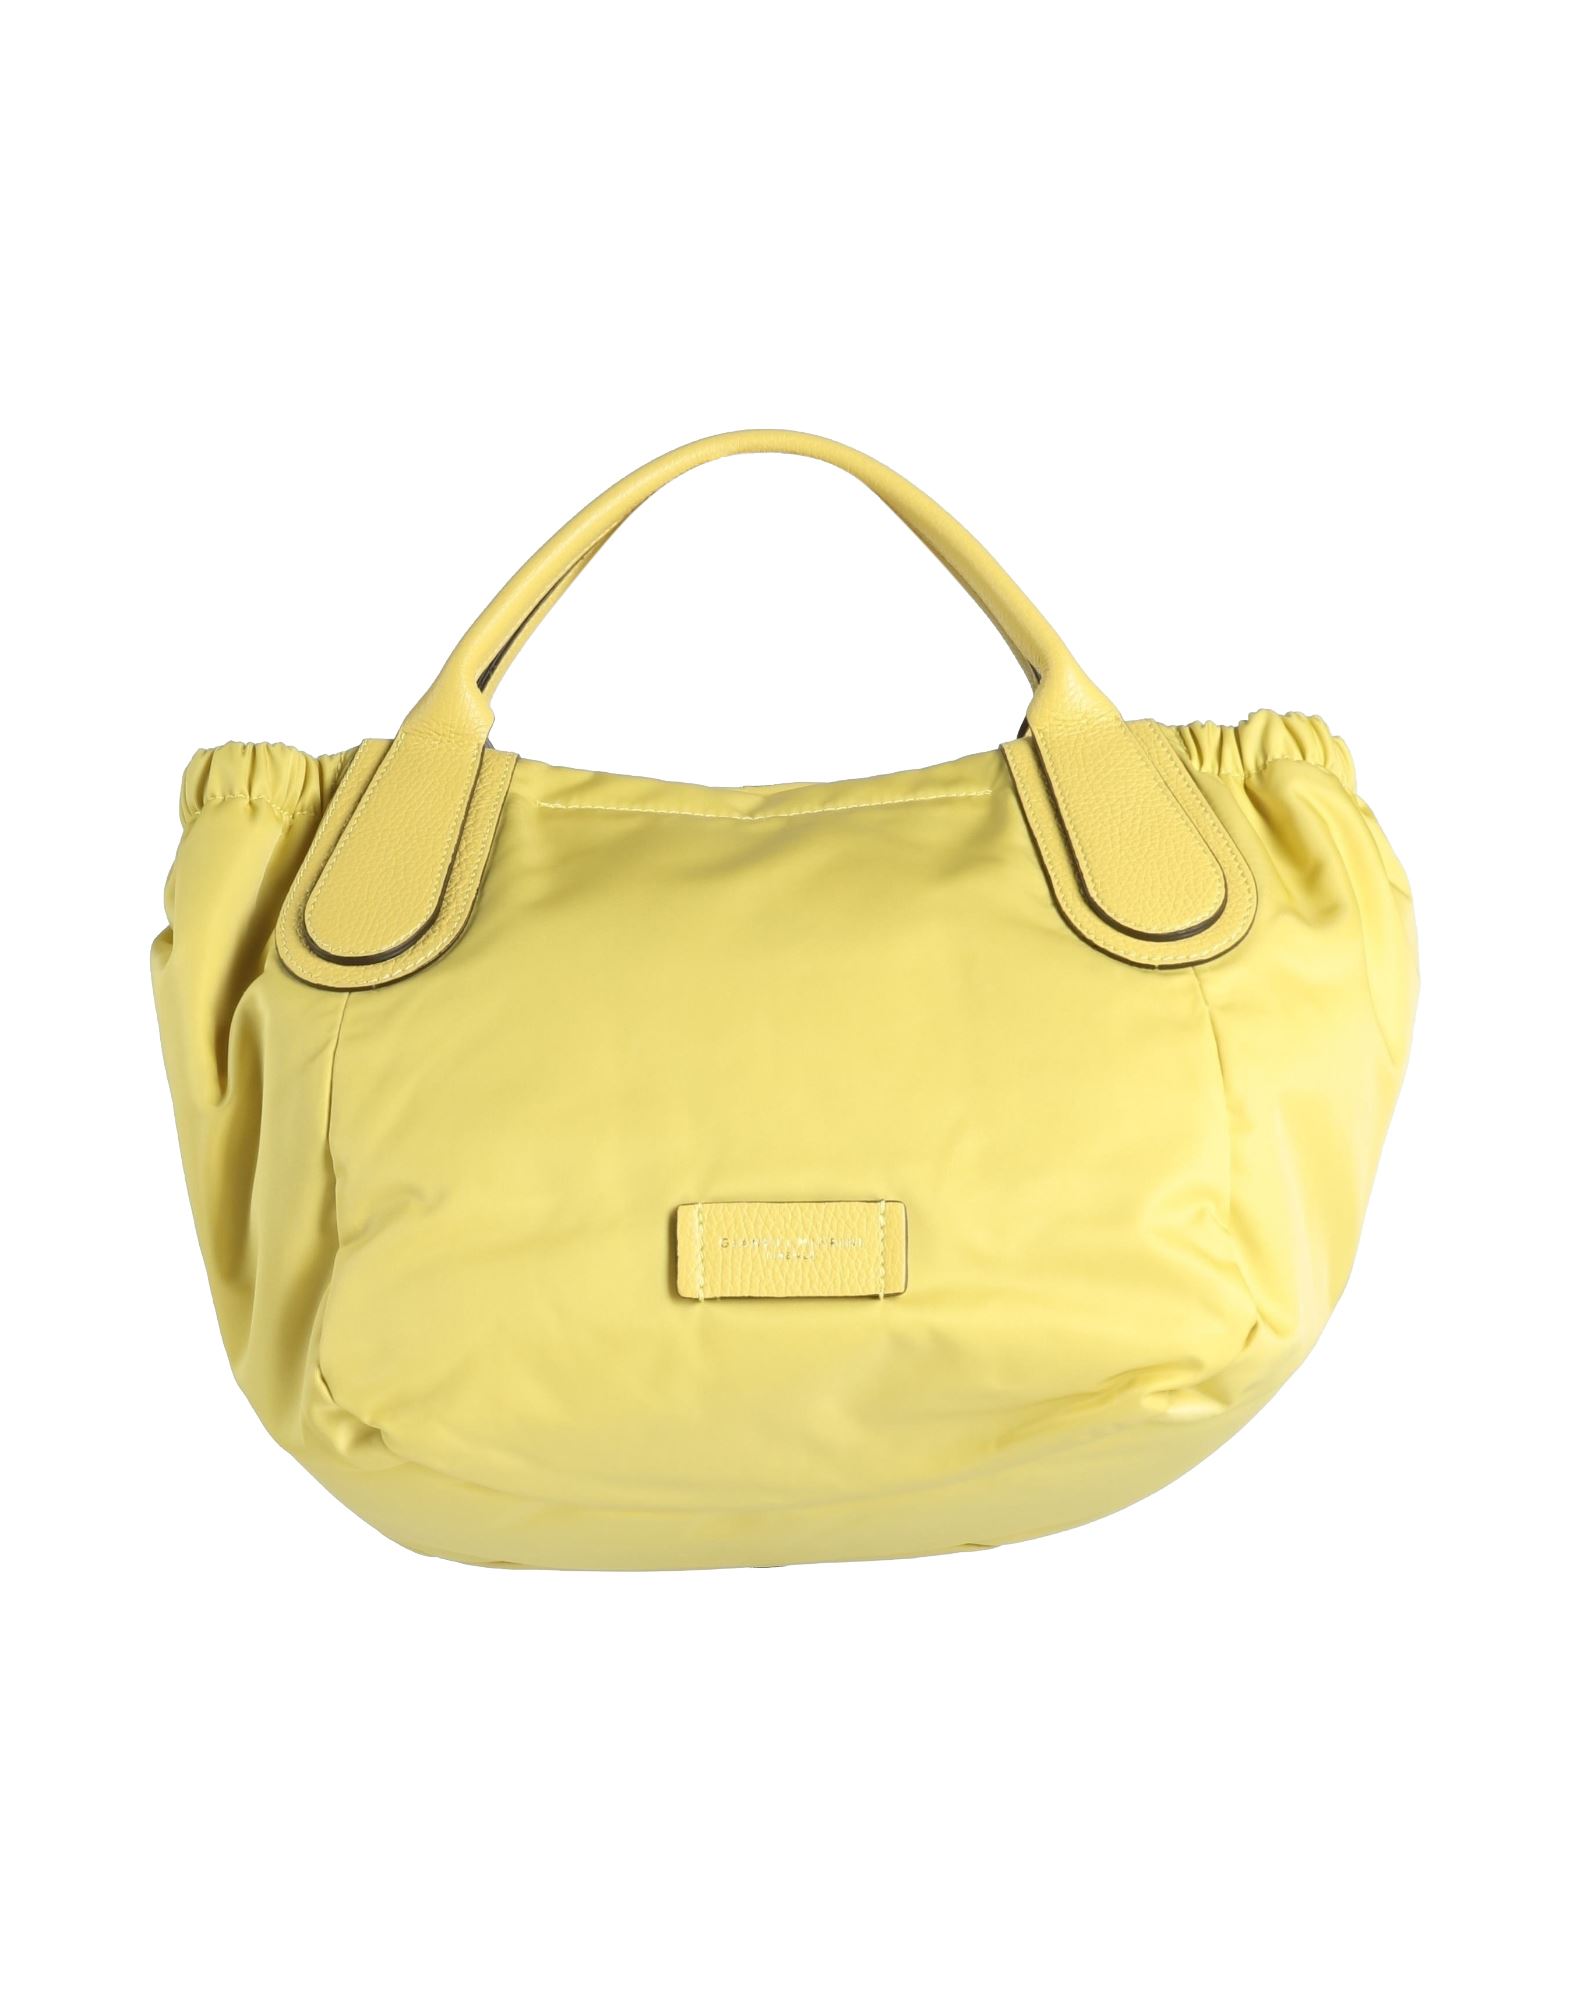 Gianni Chiarini Handbags In Yellow